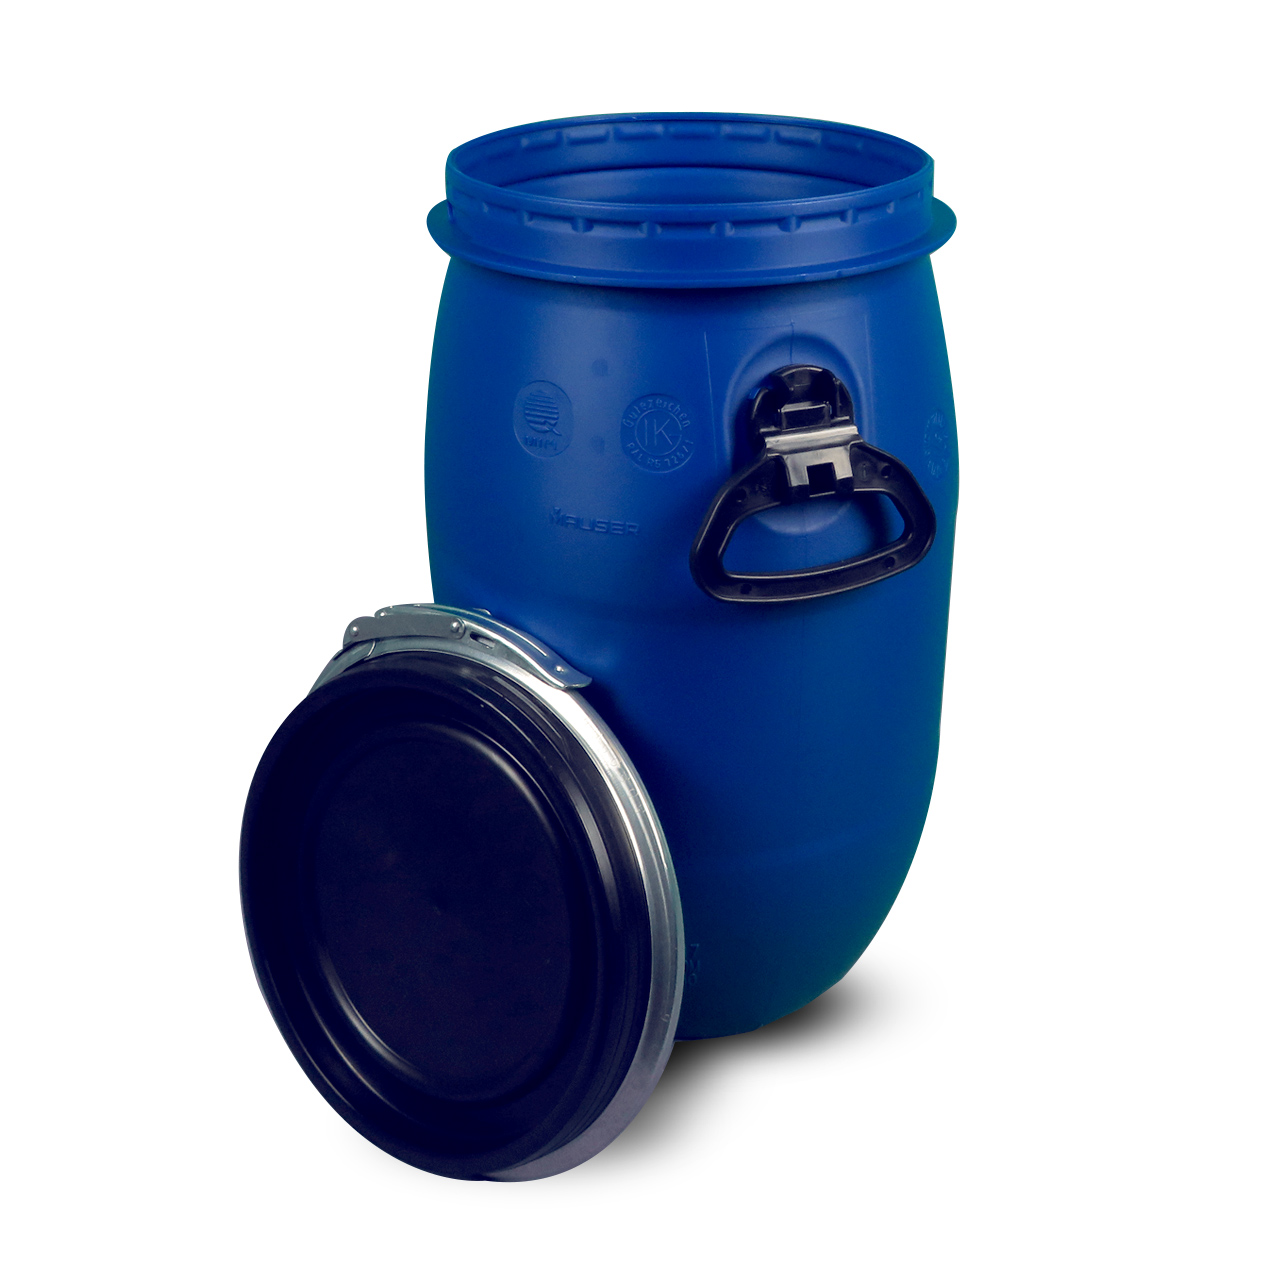 2 x 60 Liter blau gebraucht Kunststofffass Plastiktonne Plastefass Deckelfass. 